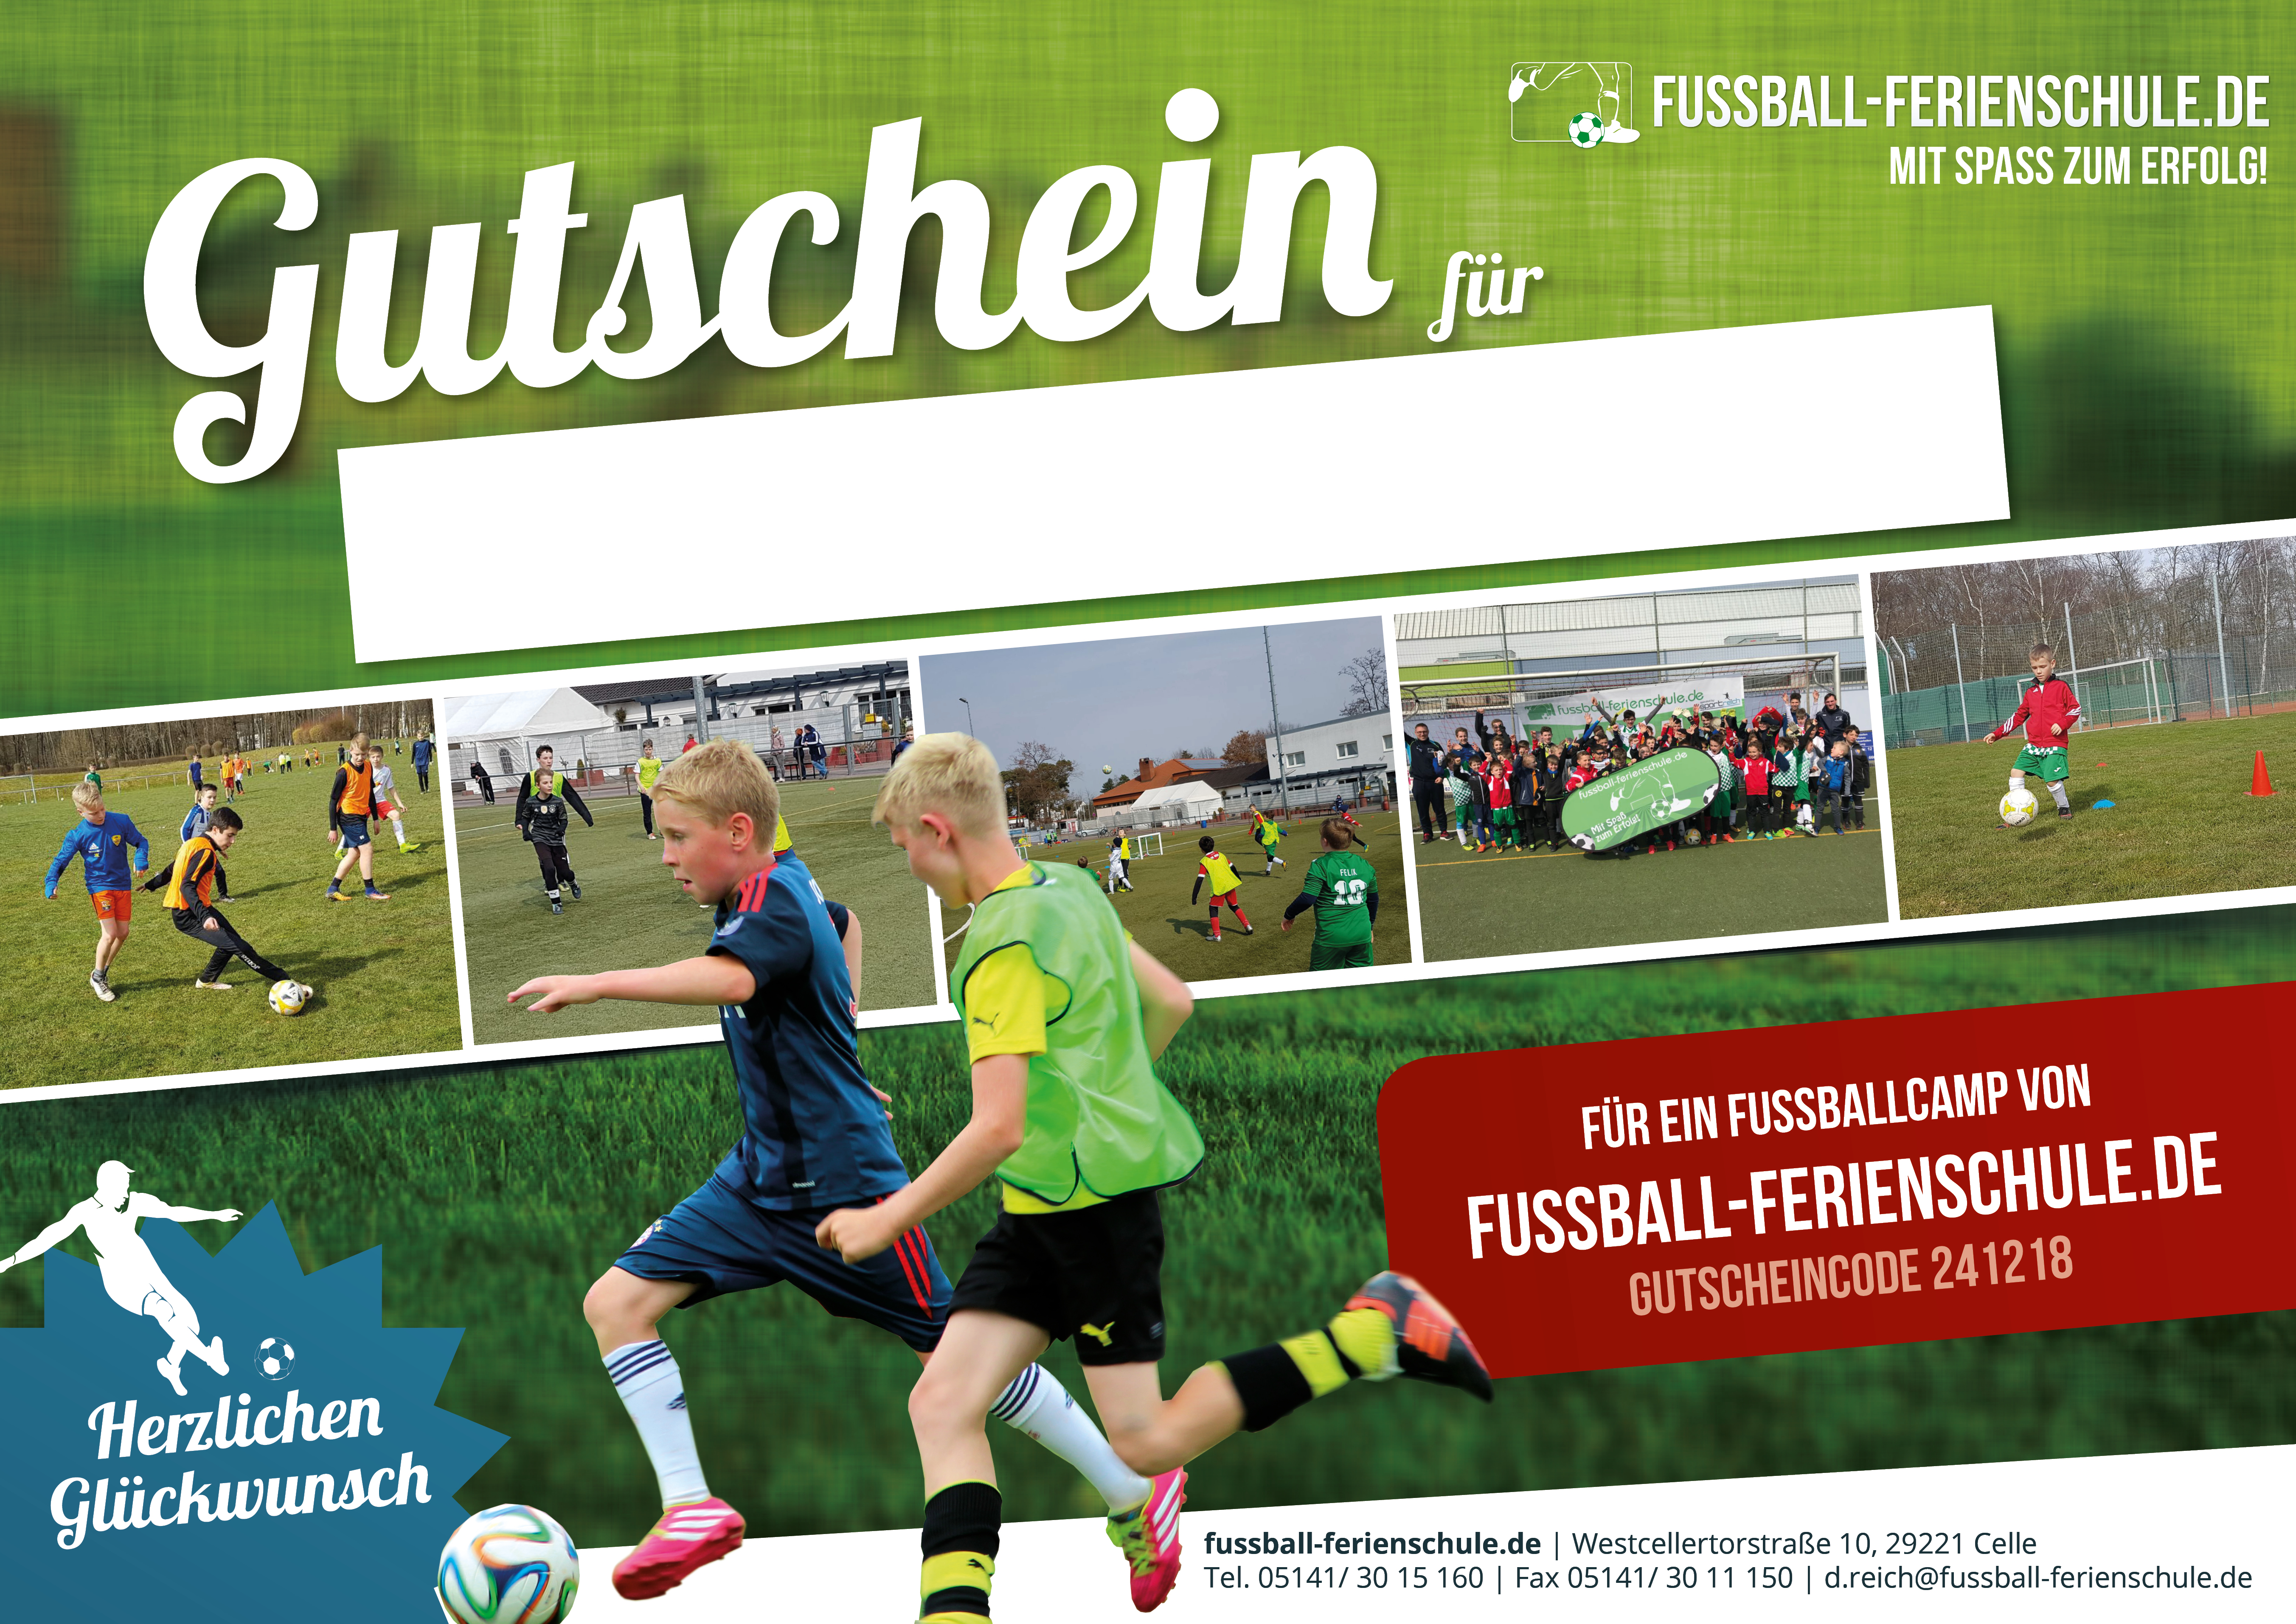 Gutschein für ein Fußballcamp – Fussball-Ferienschule.de